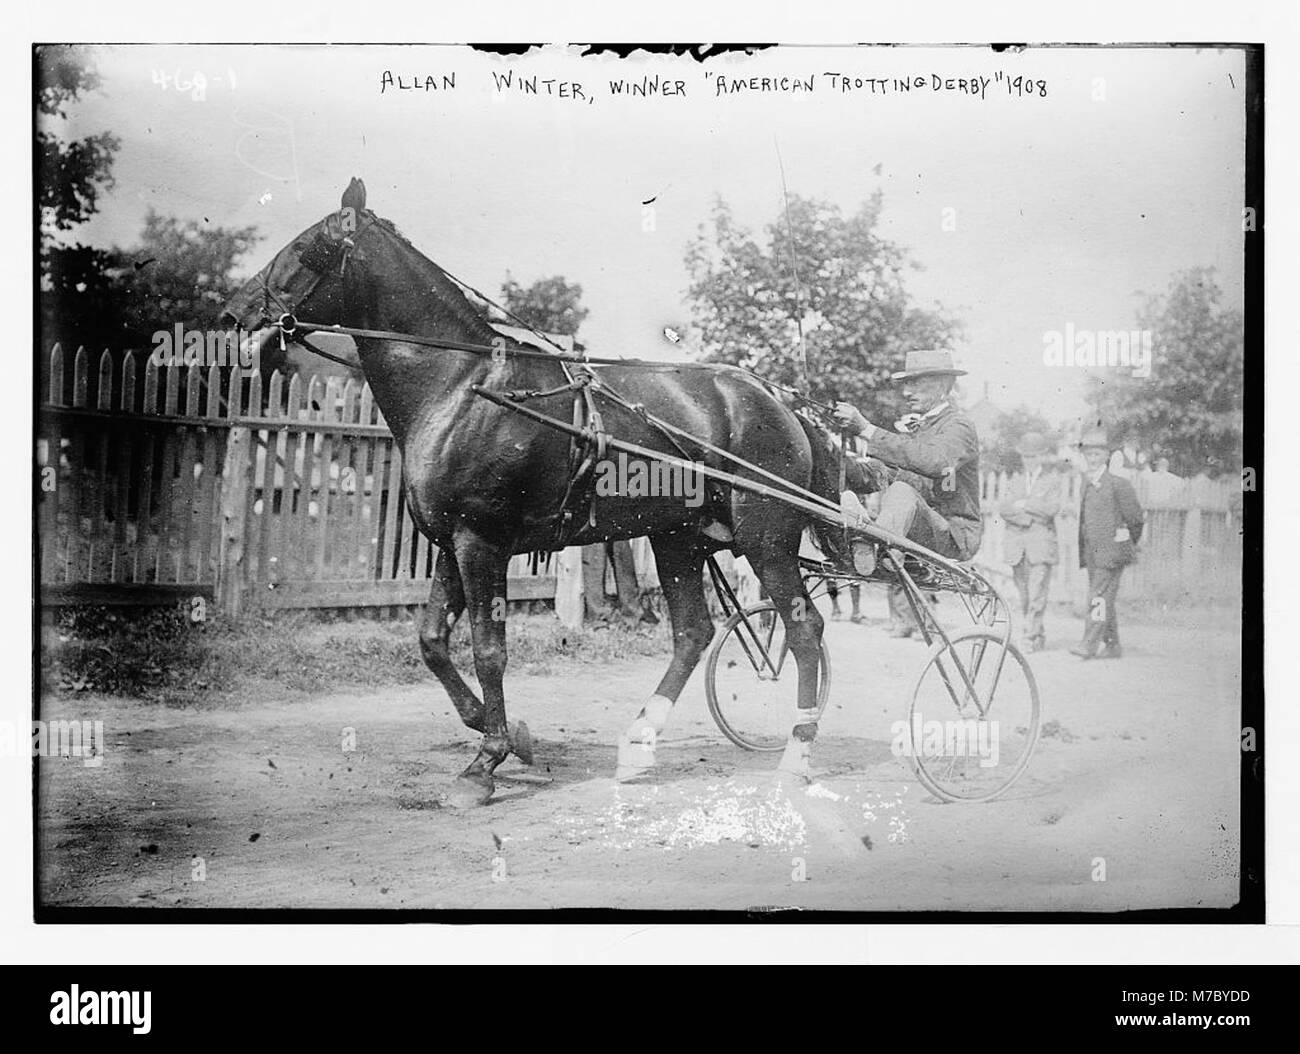 Allan Winter, Sieger, 'American Trotting Derby, 1908 LCCN 2014682105 Stockfoto